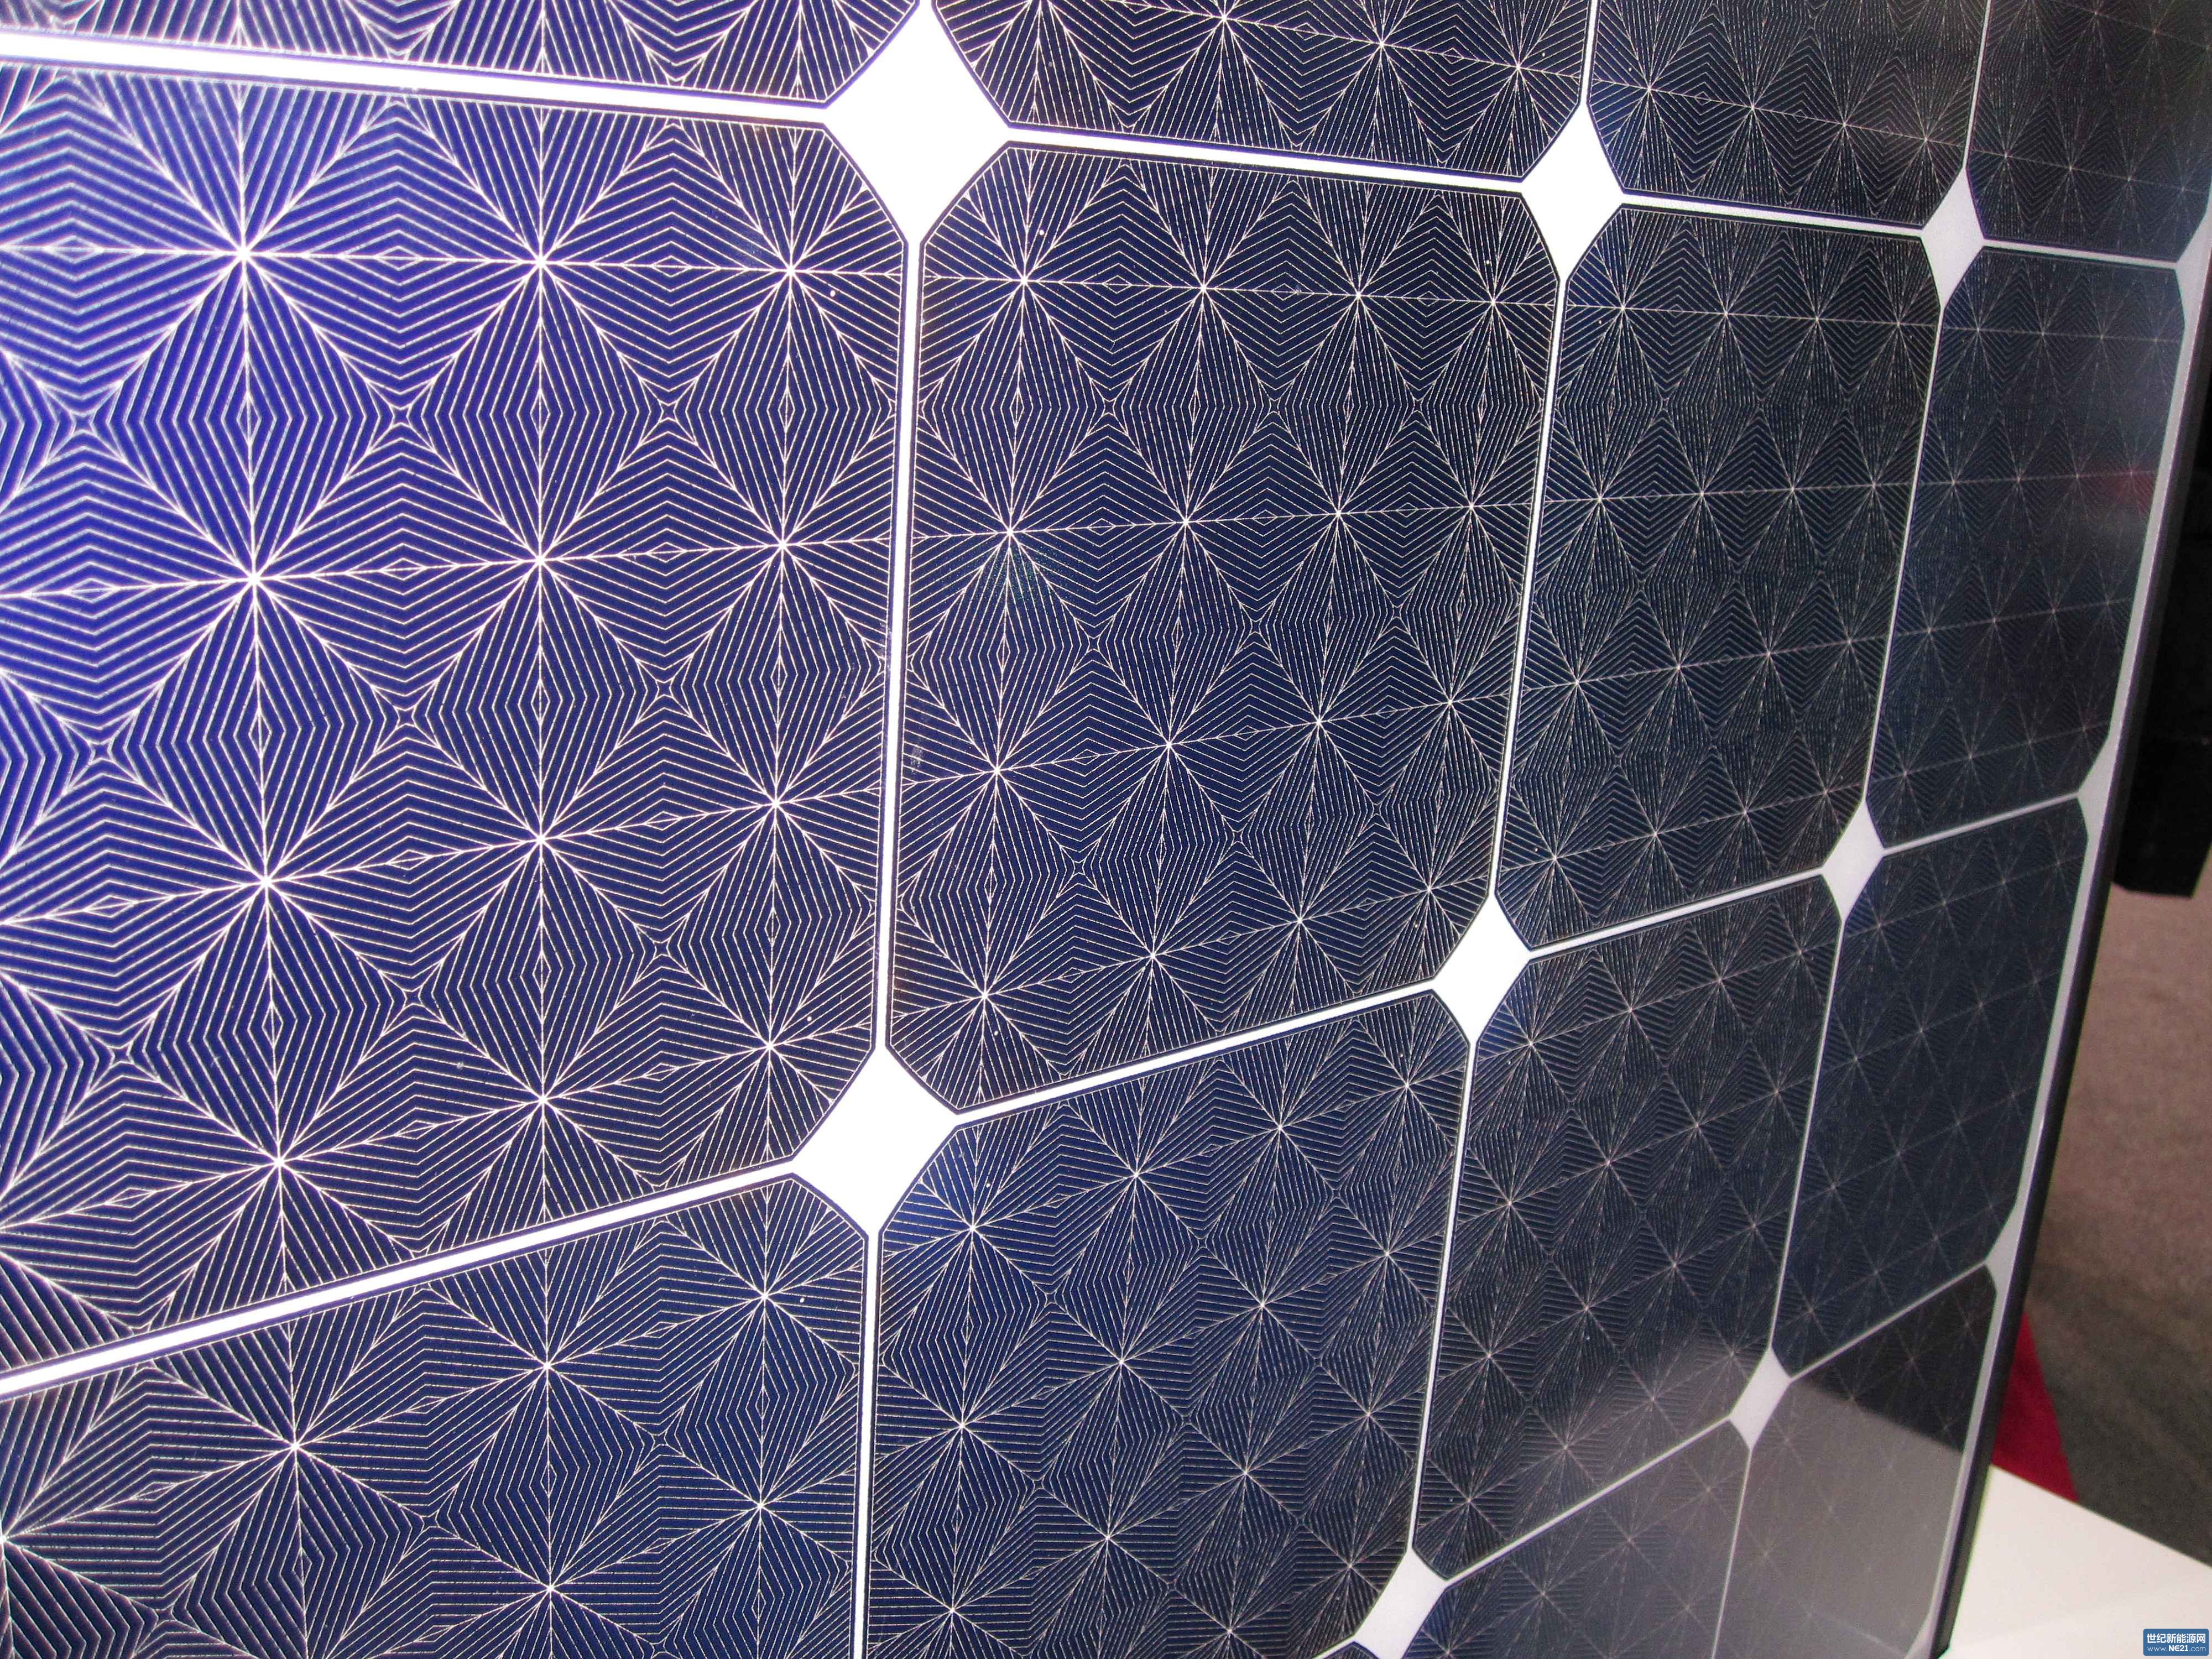 SNEC光伏展MWT技术提升太阳能电池效率,但